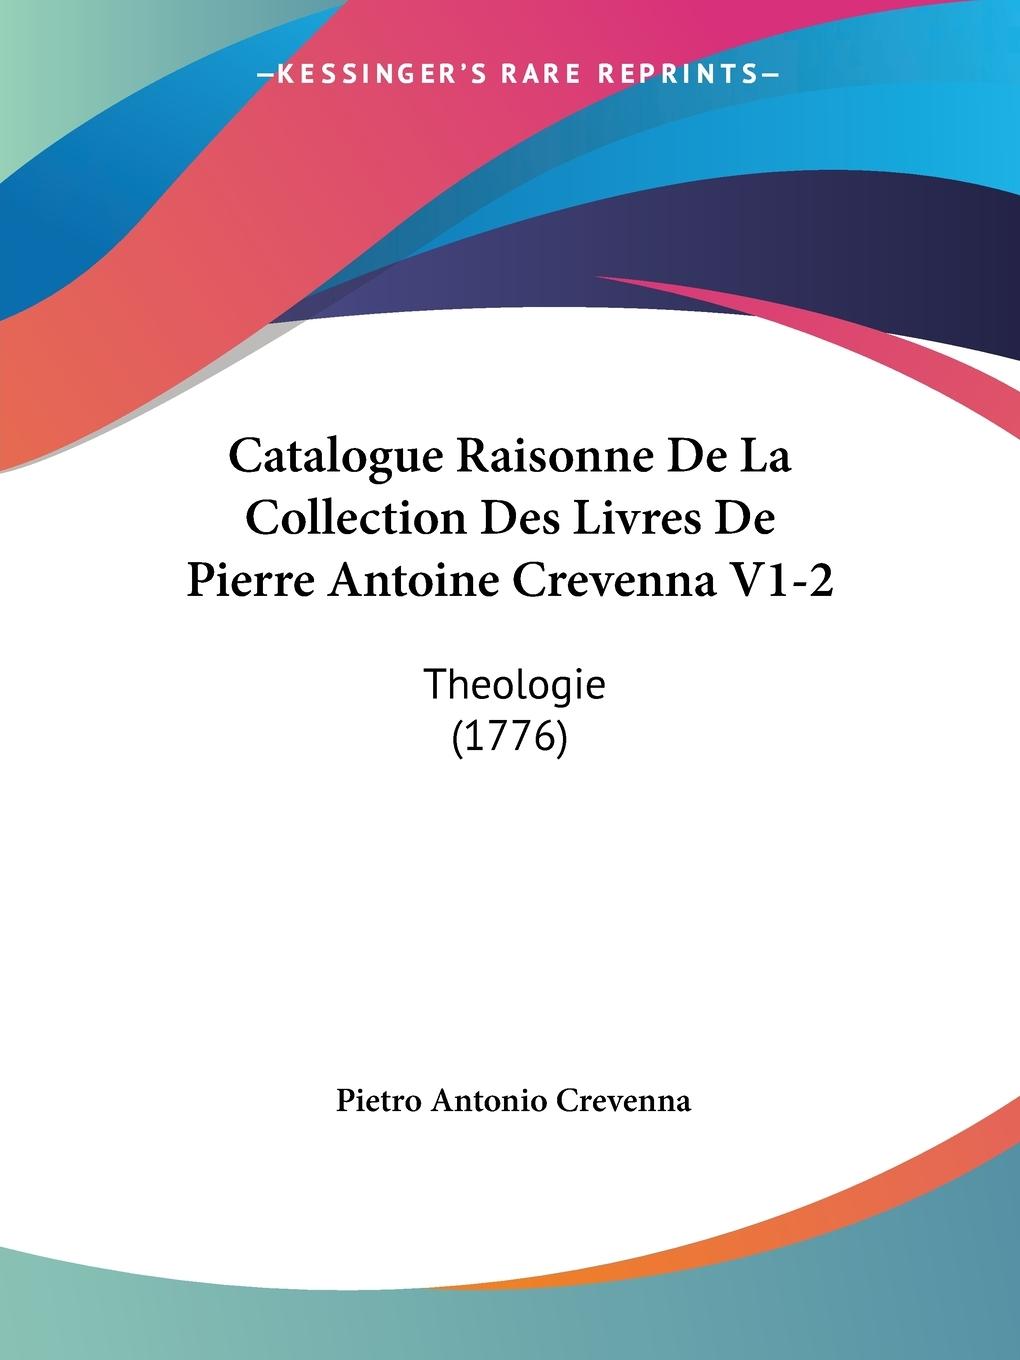 Catalogue Raisonne De La Collection Des Livres De Pierre Antoine Crevenna V1-2 - Crevenna, Pietro Antonio